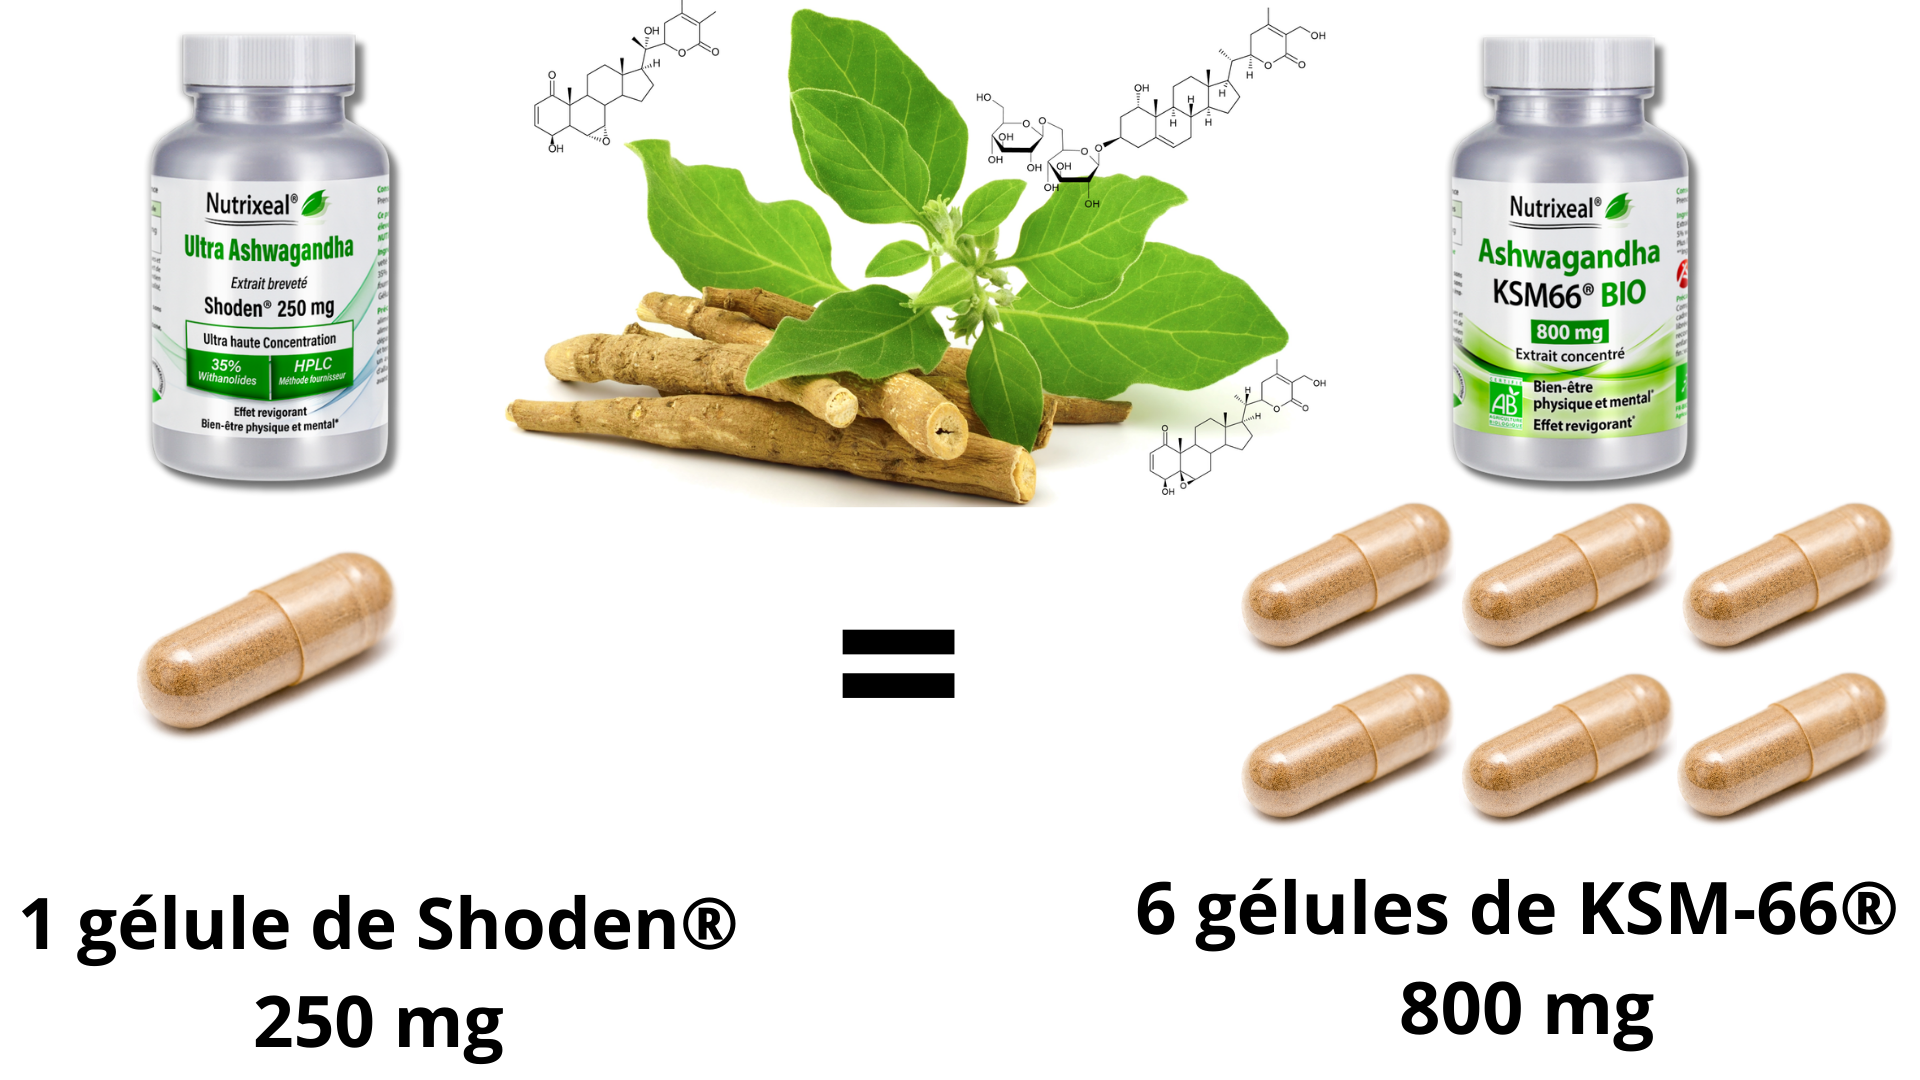 Comparaison de dosage de l'ashwagandha Shoden et l'ashwagandha ksm-66